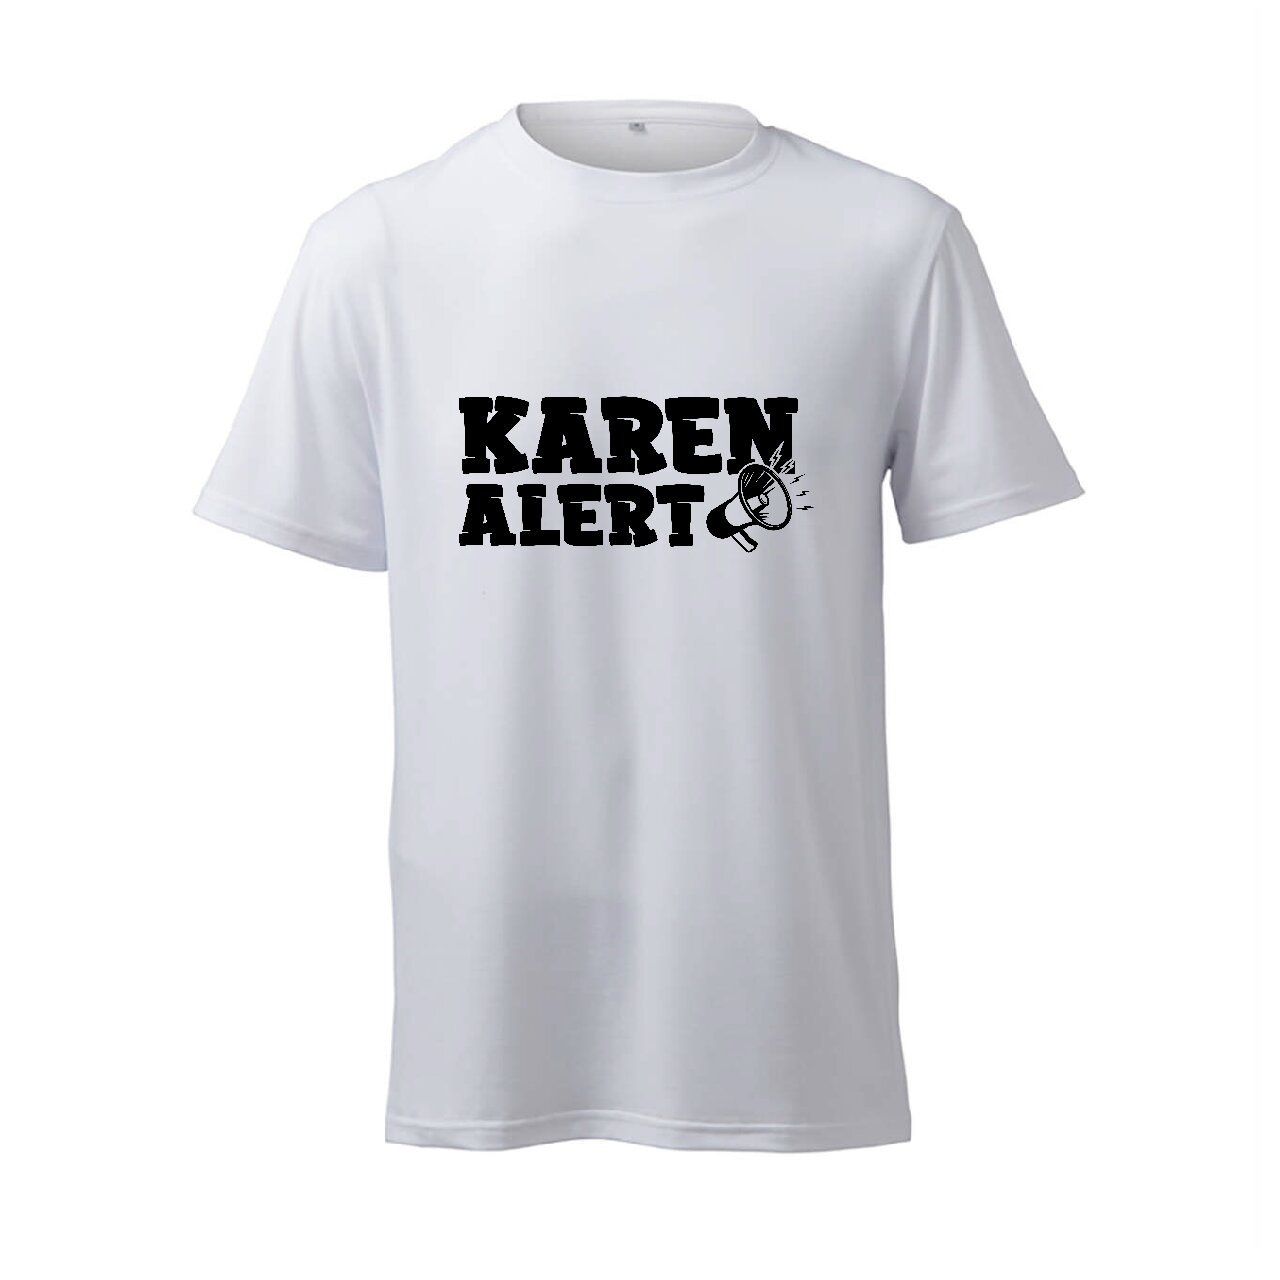 Karen Alert - T-Shirt